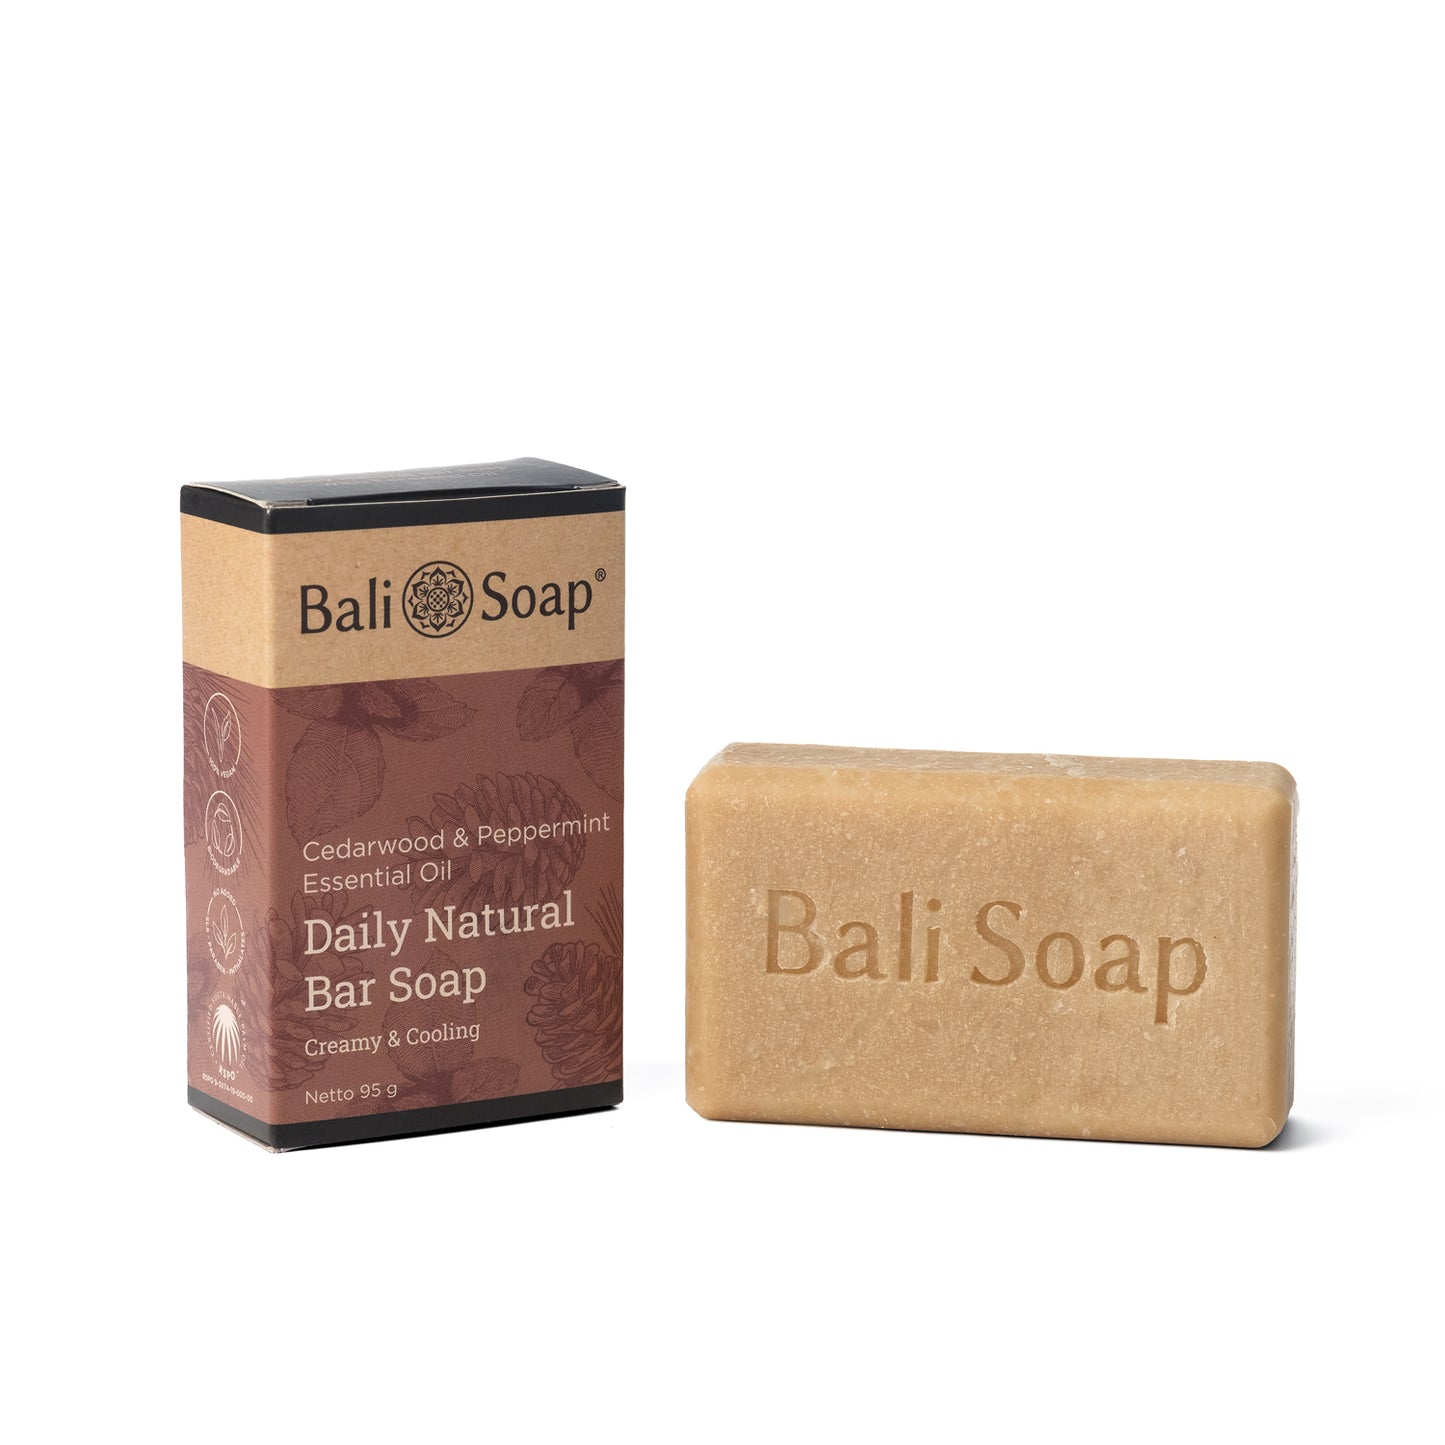 Bali Soap Essential Oil Bar Soap 95g - Cedarwood & Peppermint